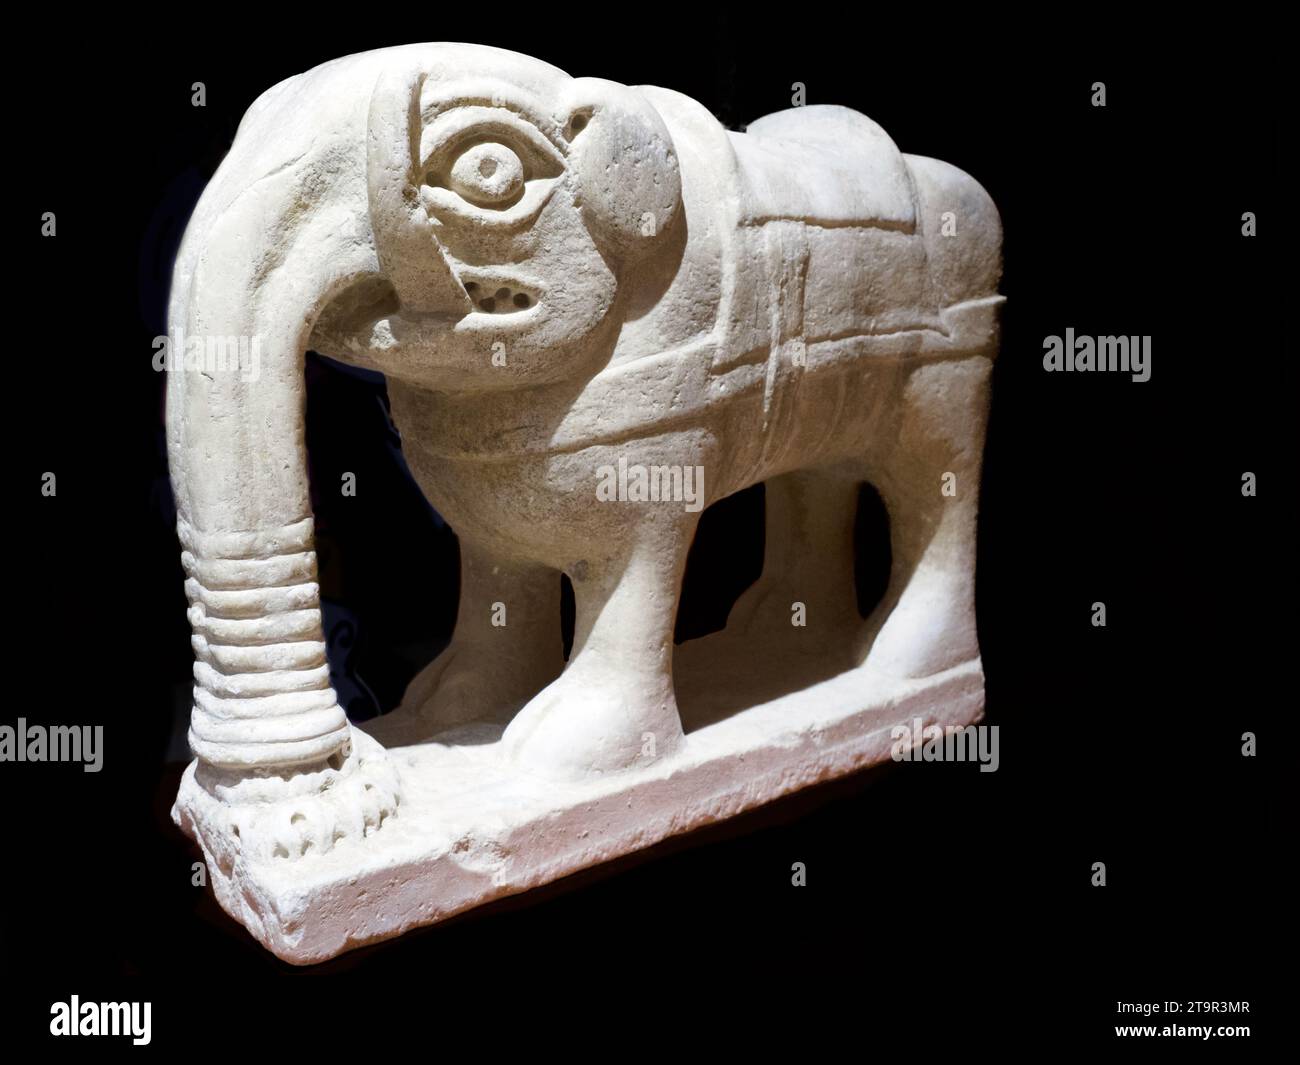 Petit éléphant de sculpteur sicilien inconnu, marbre du 12e siècle - Musée diocésain d'Agrigente - Sicile, Italie Banque D'Images